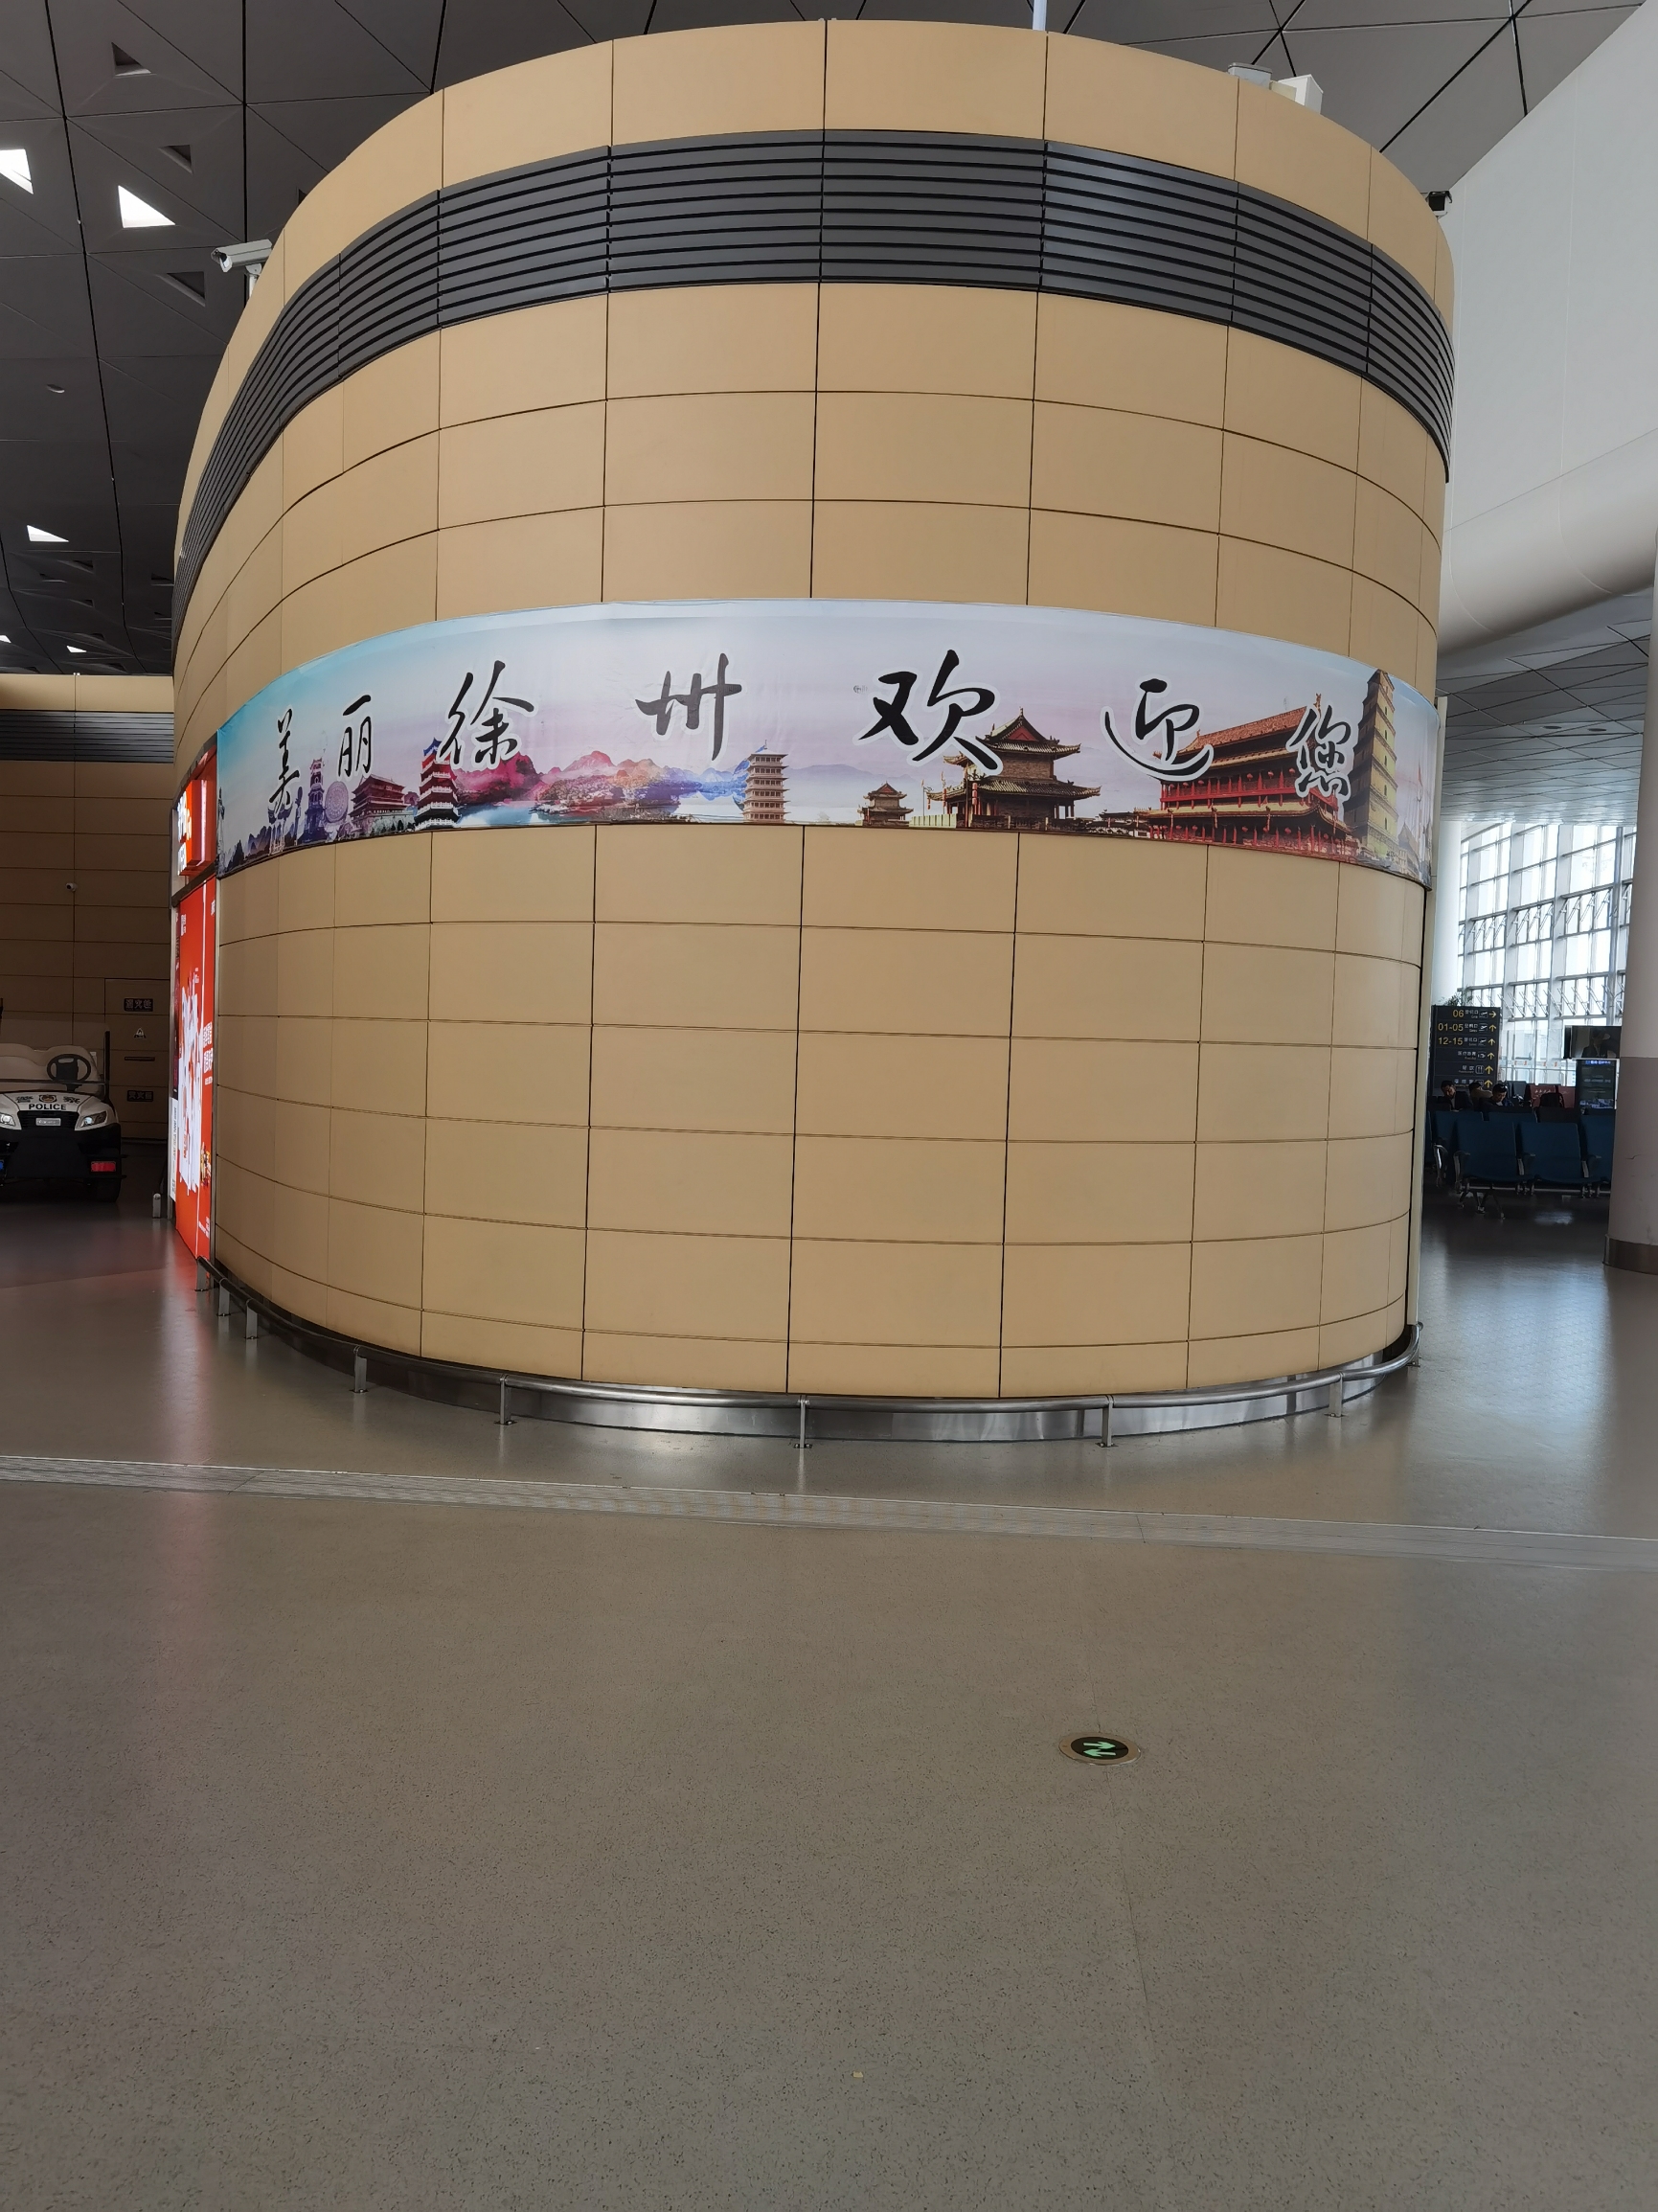 徐州观音国际机场位于江苏省徐州市睢宁县双沟镇境内，距离徐州市区45公里，地处徐州市东南方向。高速公路